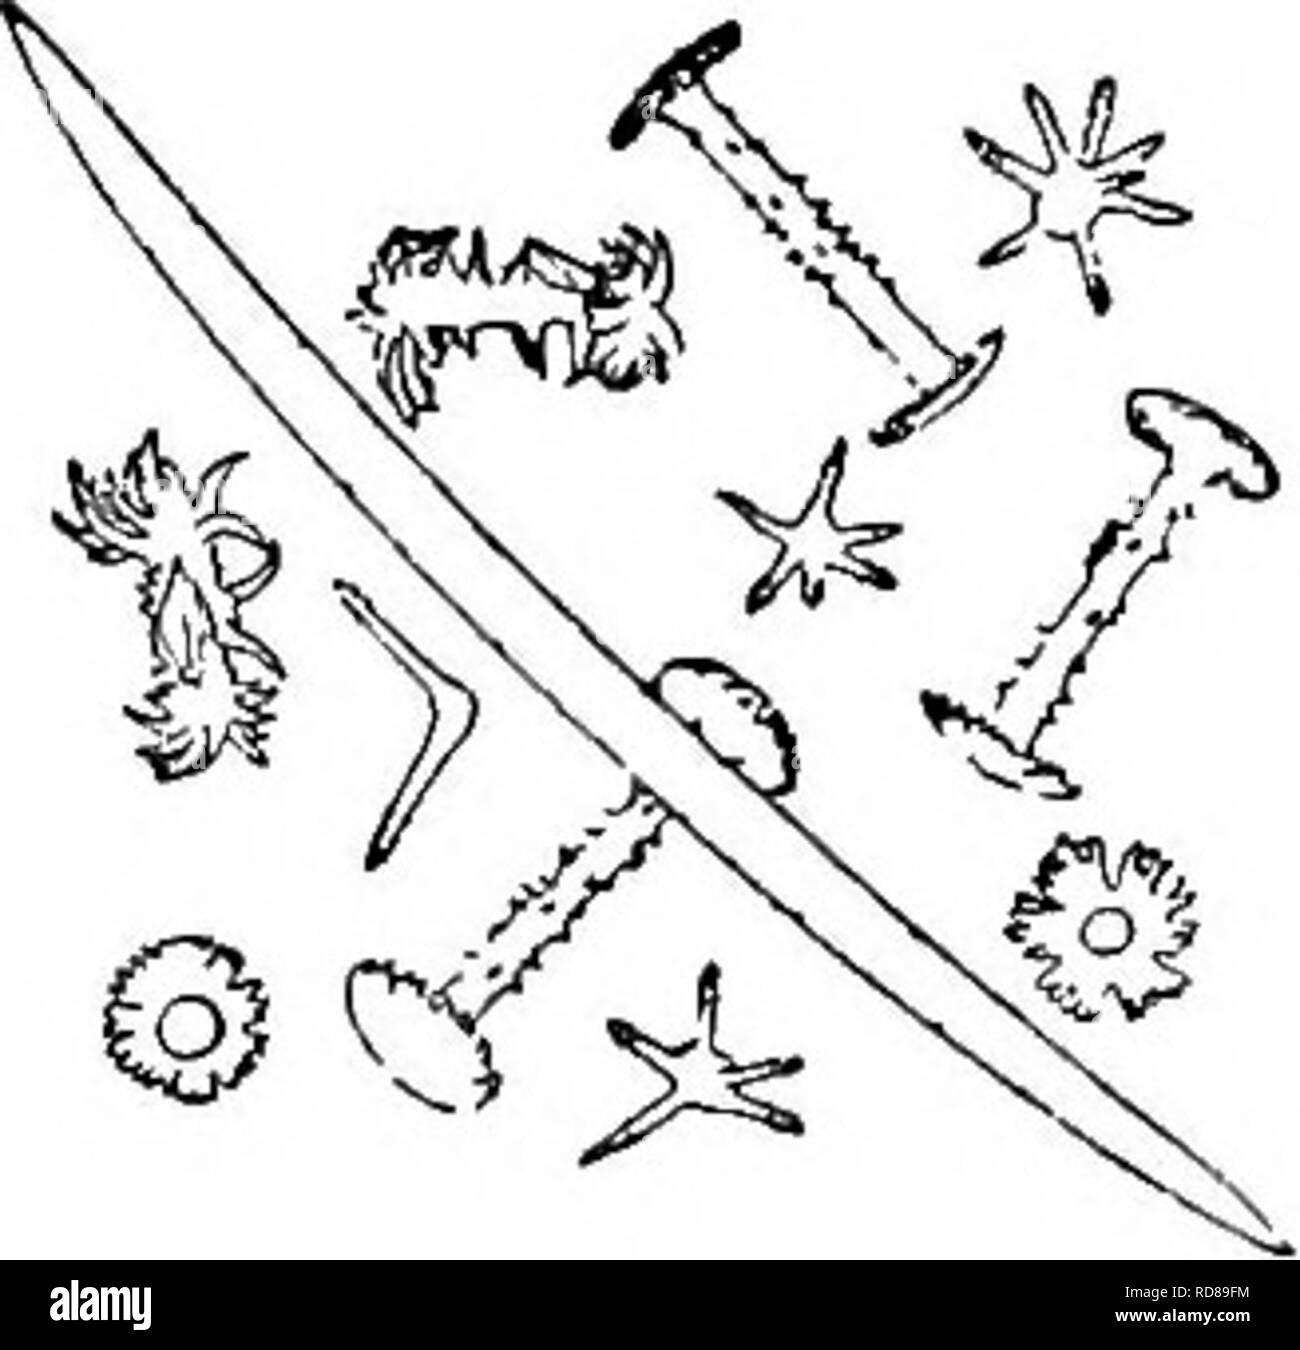 . La biologie d'eau douce. Biologie des eaux douces. 36 (20, 3S) spicules dermiques Dosilia stellaire gris. Seule espèce encore publié aux États-Unis. Dosilia palmeri (Potts, 1885). Massive éponge, presque, de temovate. Les spicules squelette microspined, courbe, fait peu à peu. Les spicules dermiques, en forme d'étoile- comprenant un nombre variable de branches de différentes longueurs, rayonnant d'un grand corps globulaire lisse ; épines bras à travers. Gemmule birotulates avec de longues épines, rotules arbres dentelée. À partir de la rivière Colorado, 60 milles au sud de Fort Yuma, attaché à branches pendantes inondés par freshe de printemps Banque D'Images